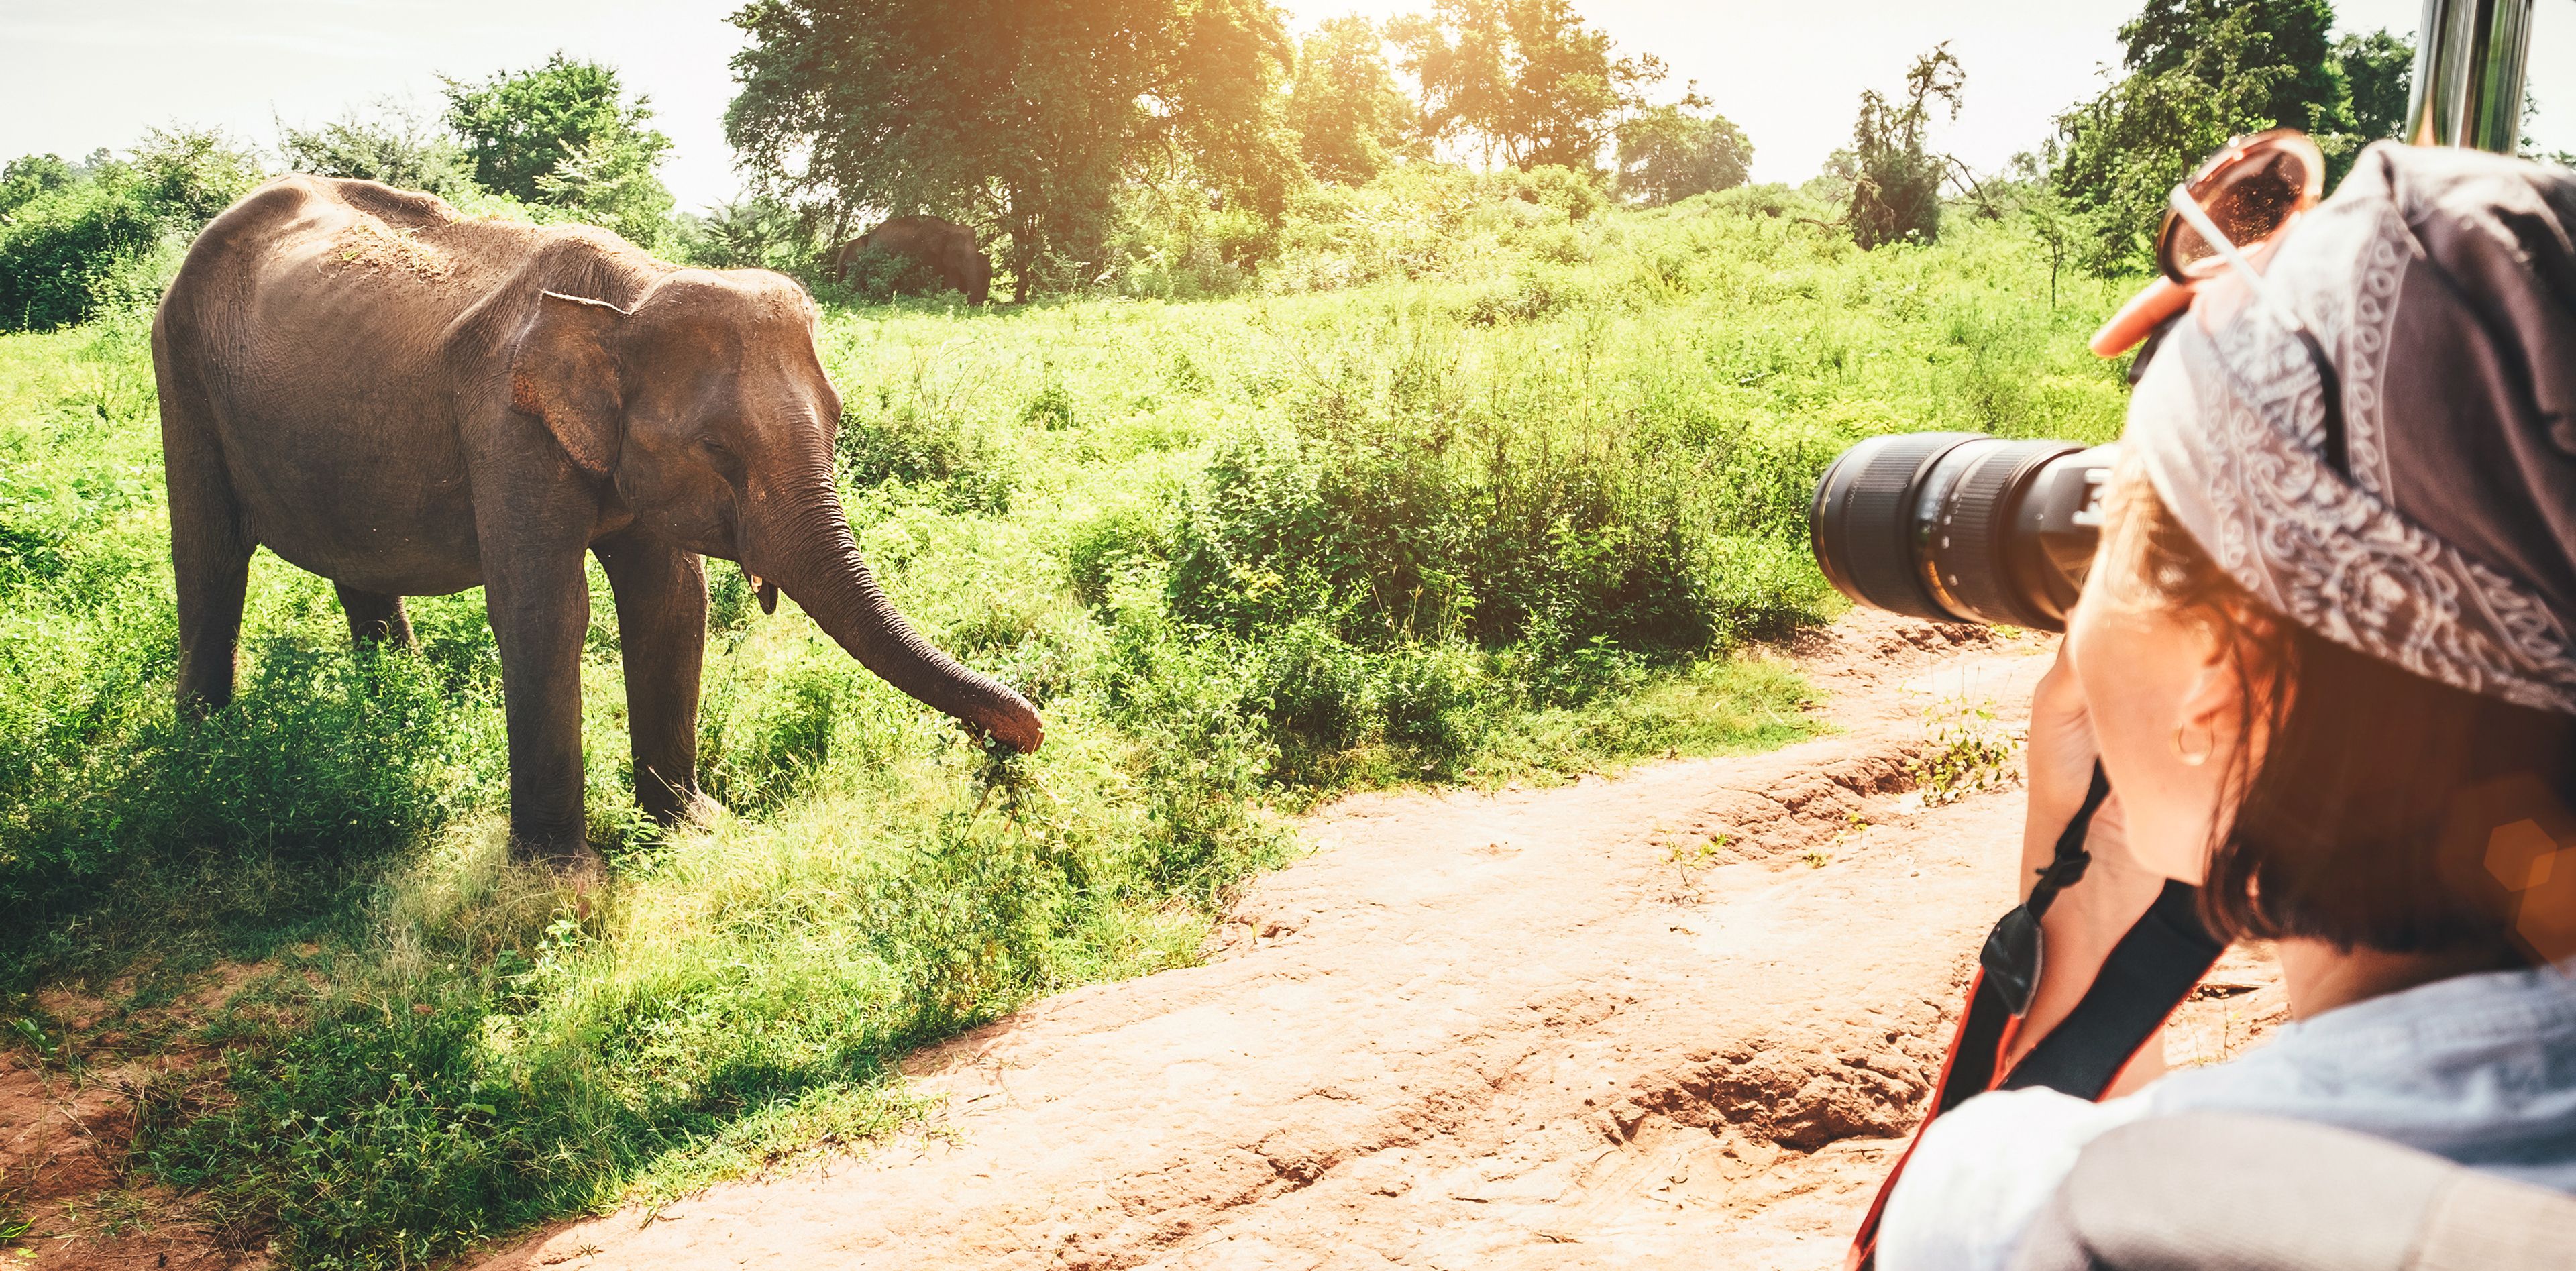 Frau beim Fotografieren eines Elefanten während einer Safari